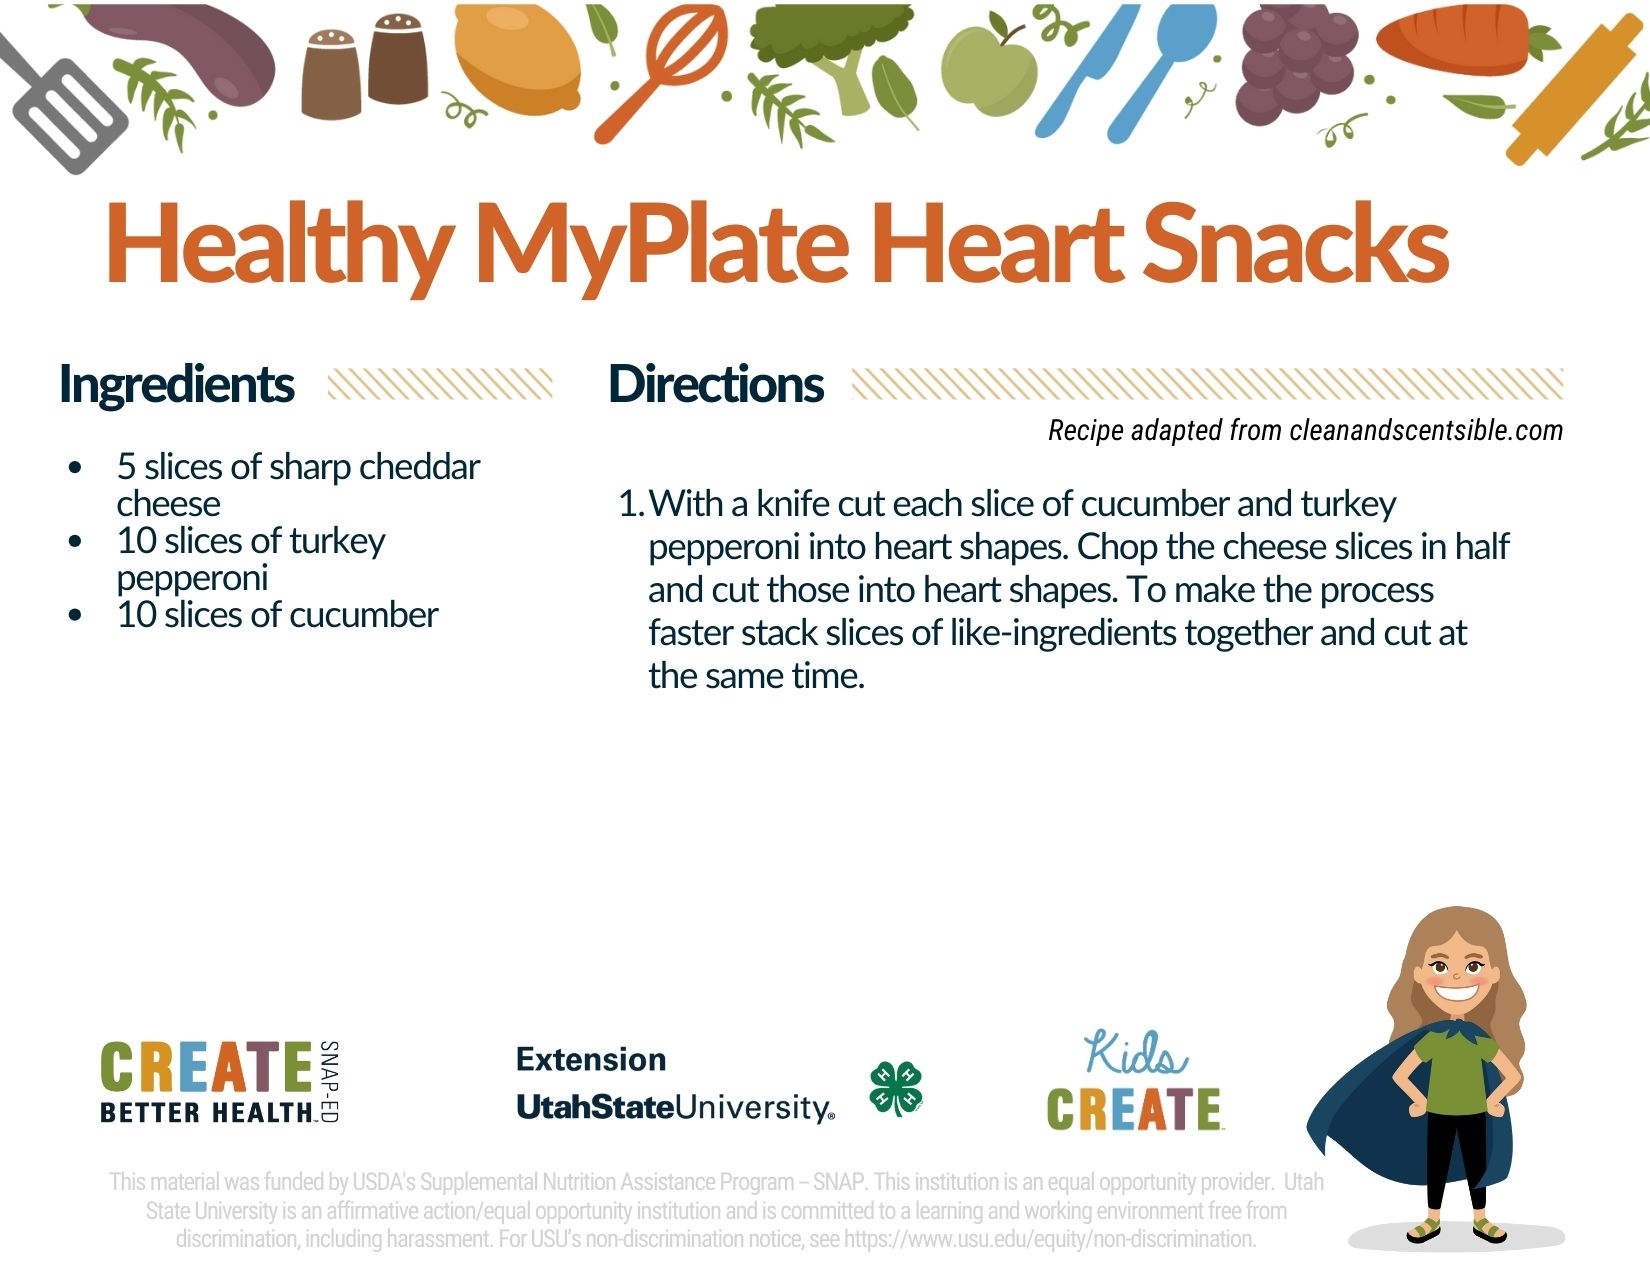 MyPlate Heart Snacks